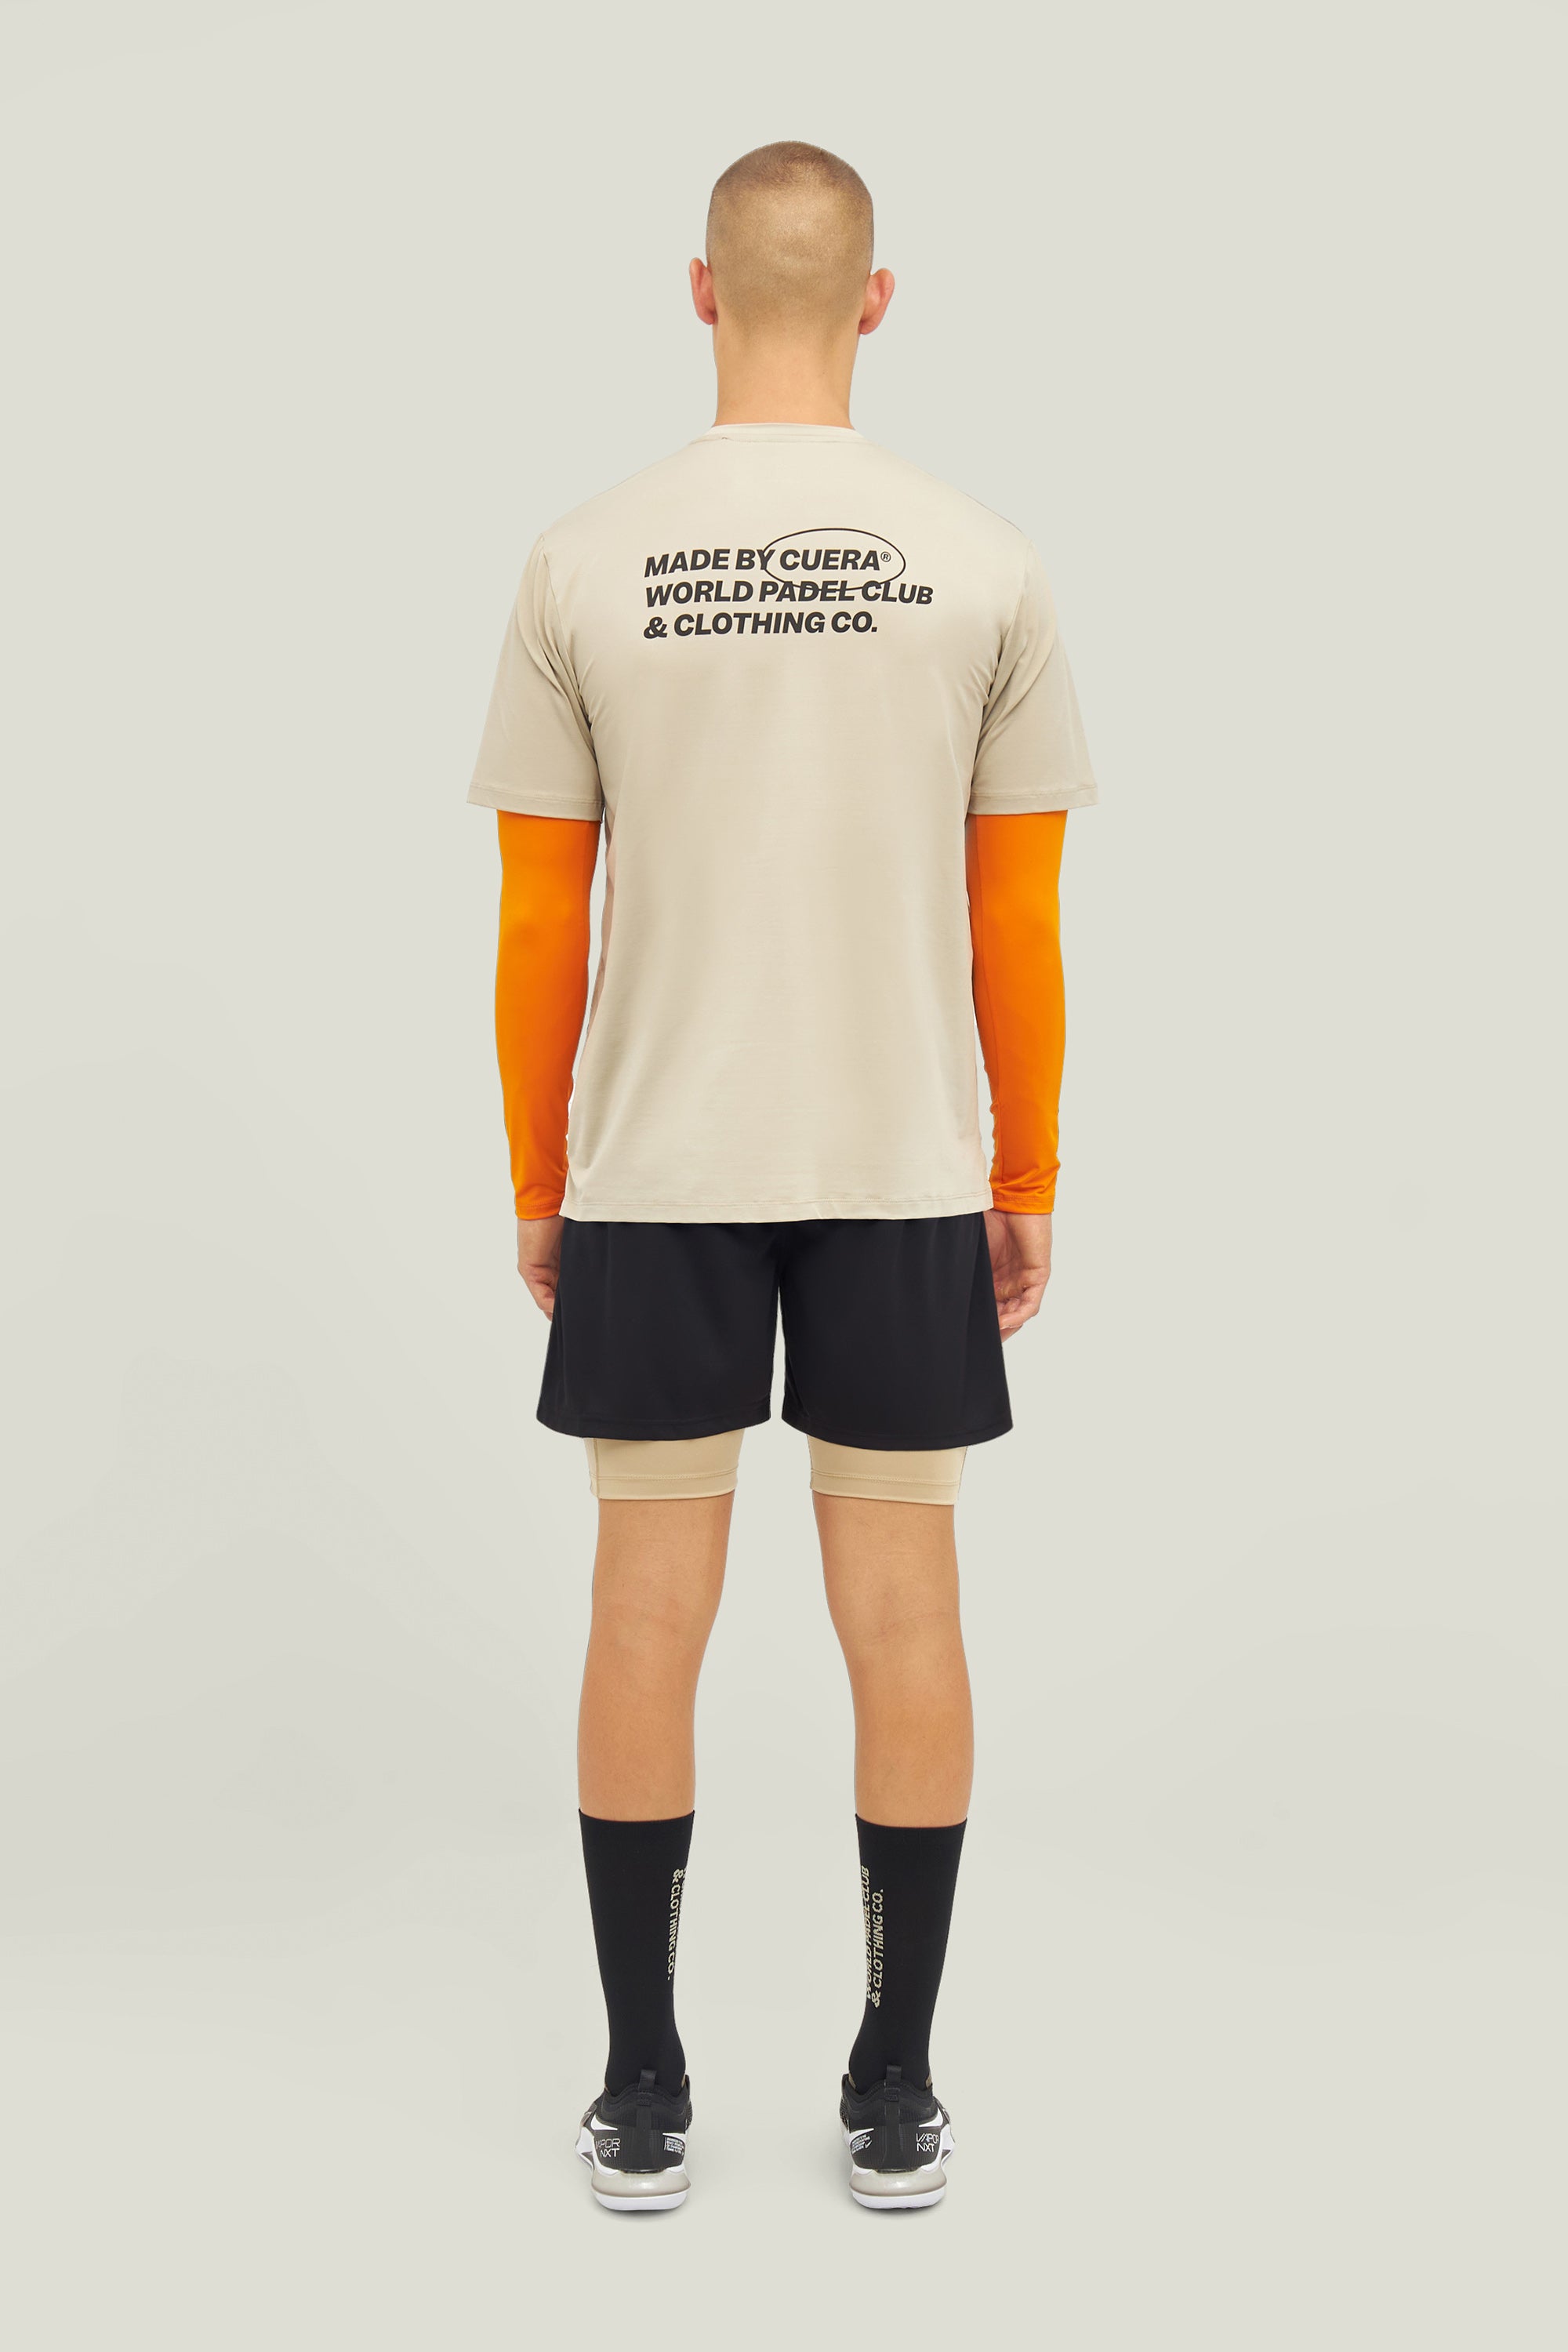 Cuera Oncourt Made T-shirt (Grå)